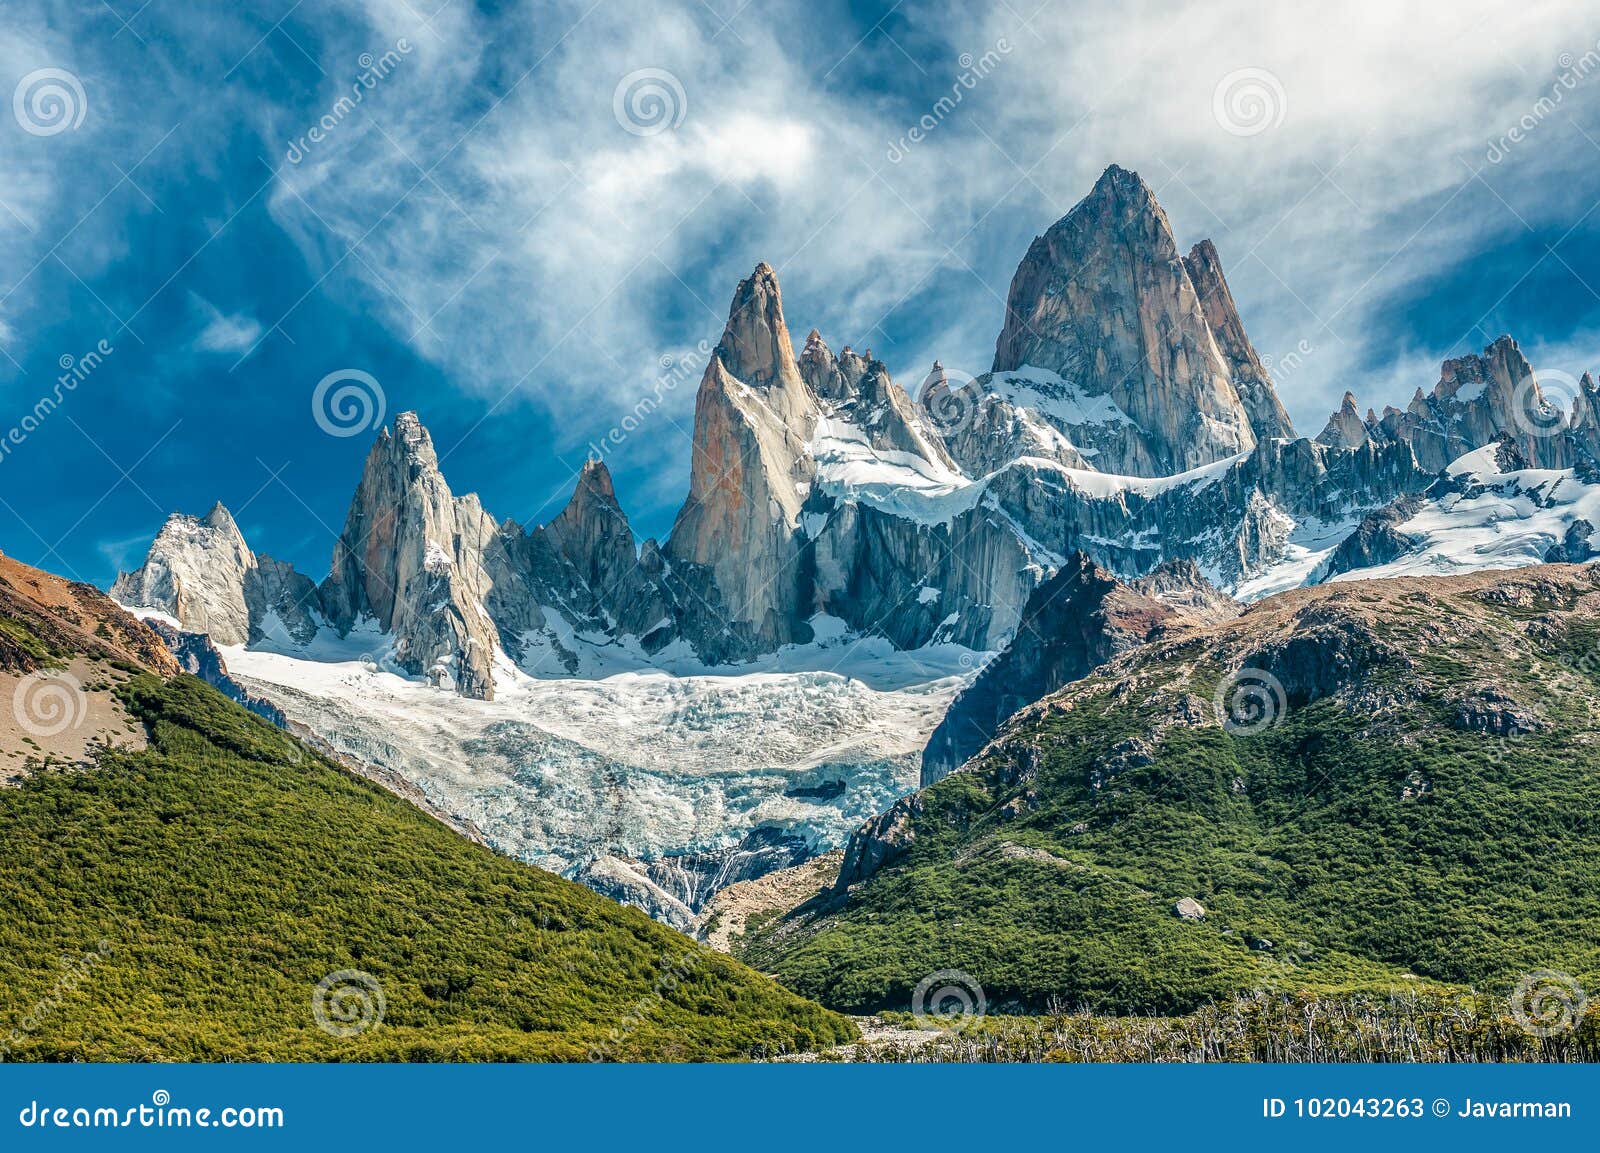 fitz roy mountain, el chalten, patagonia, argentina